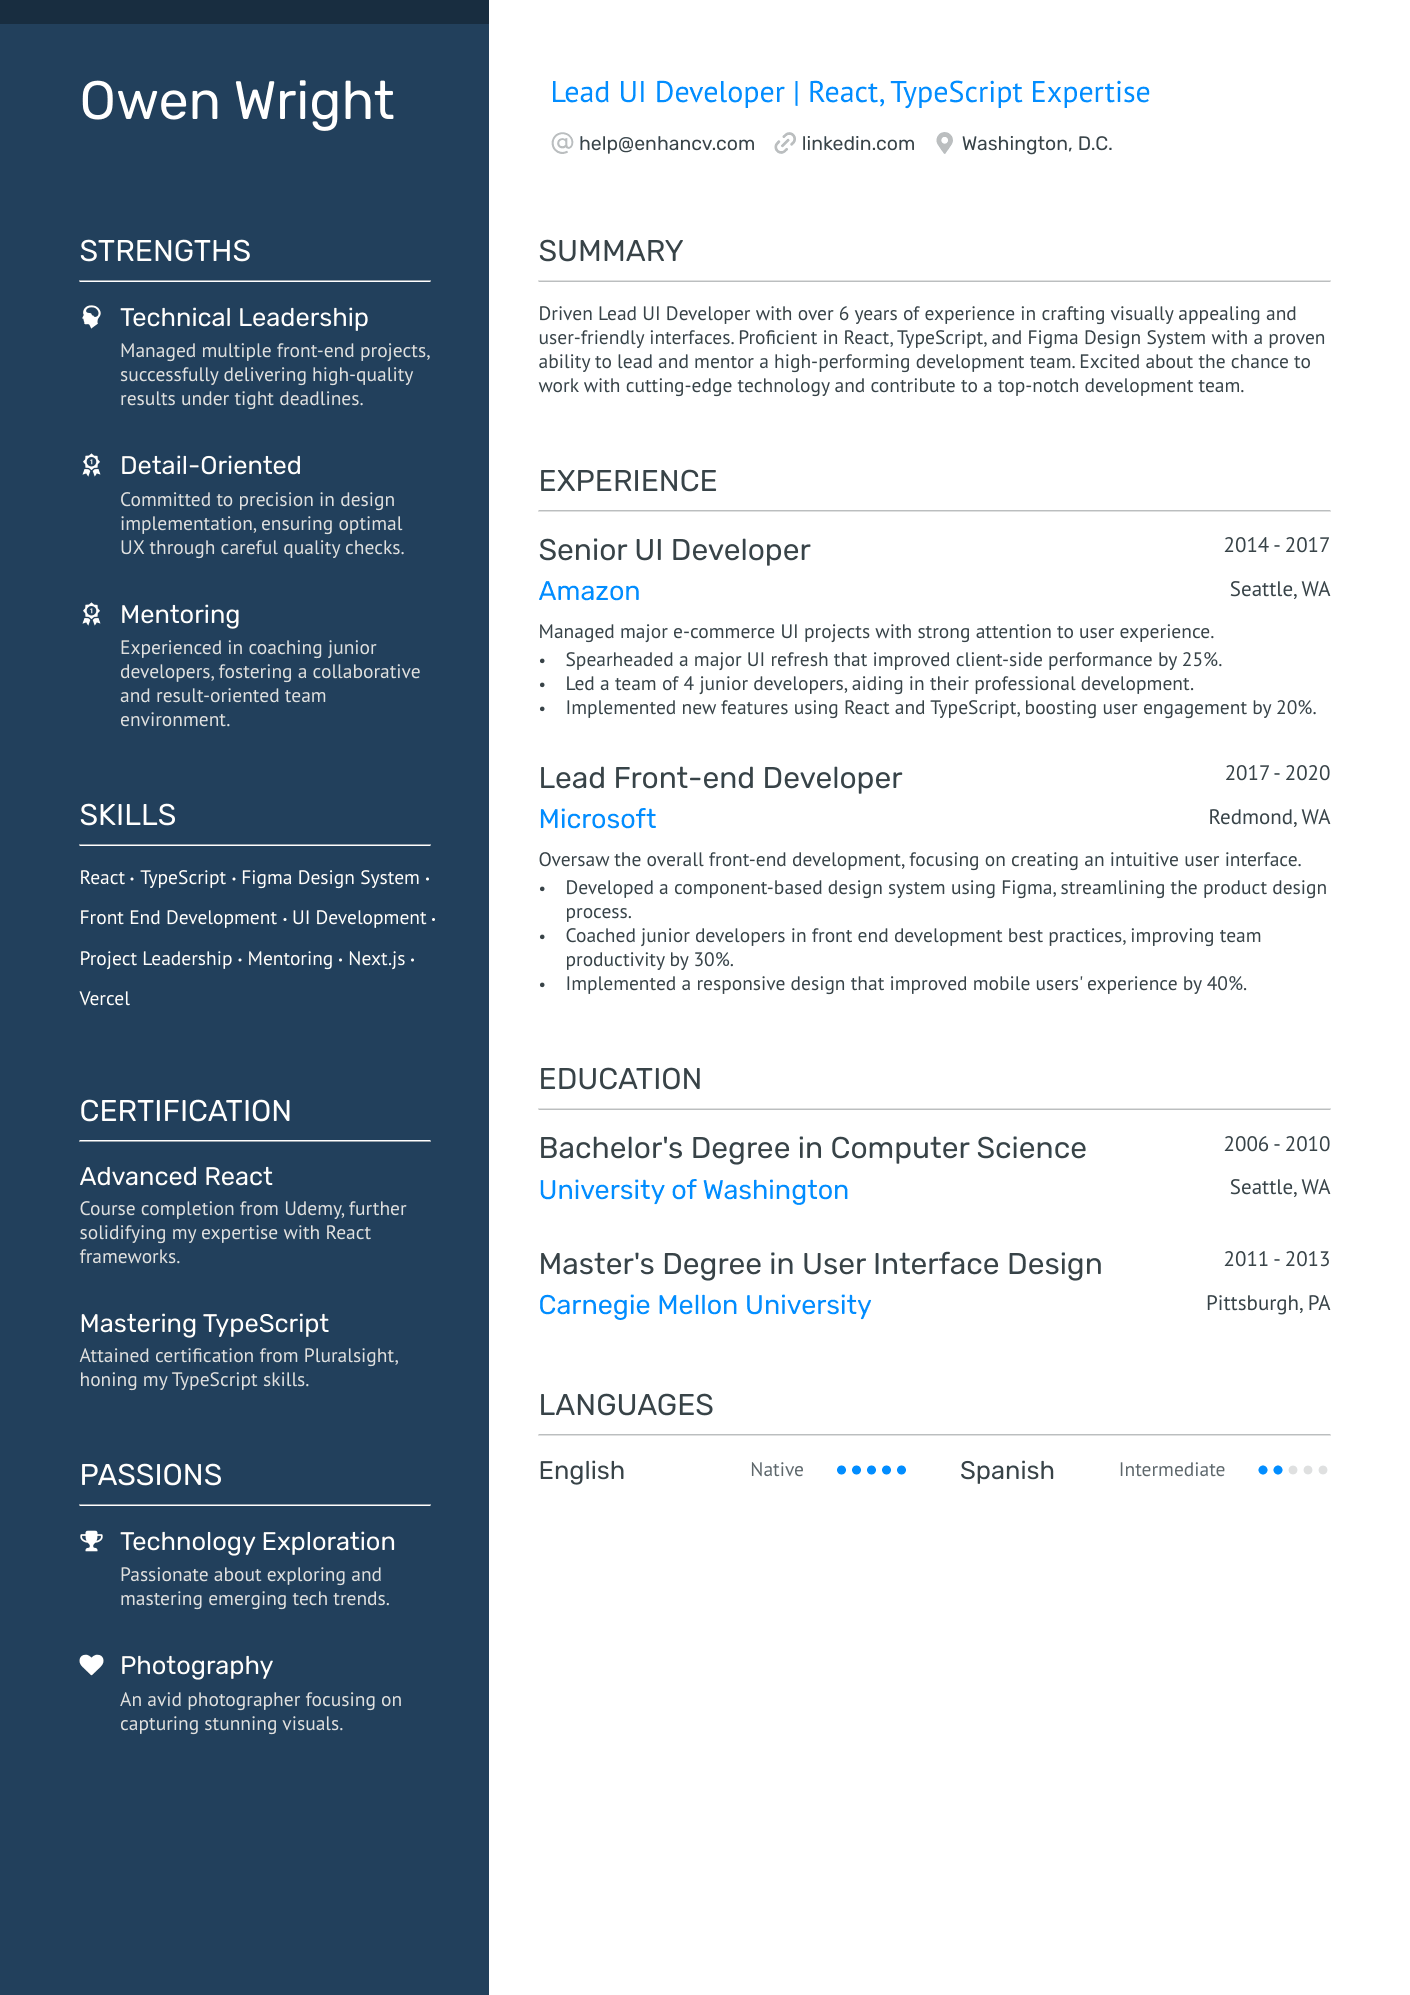 resume for entry level front end developer